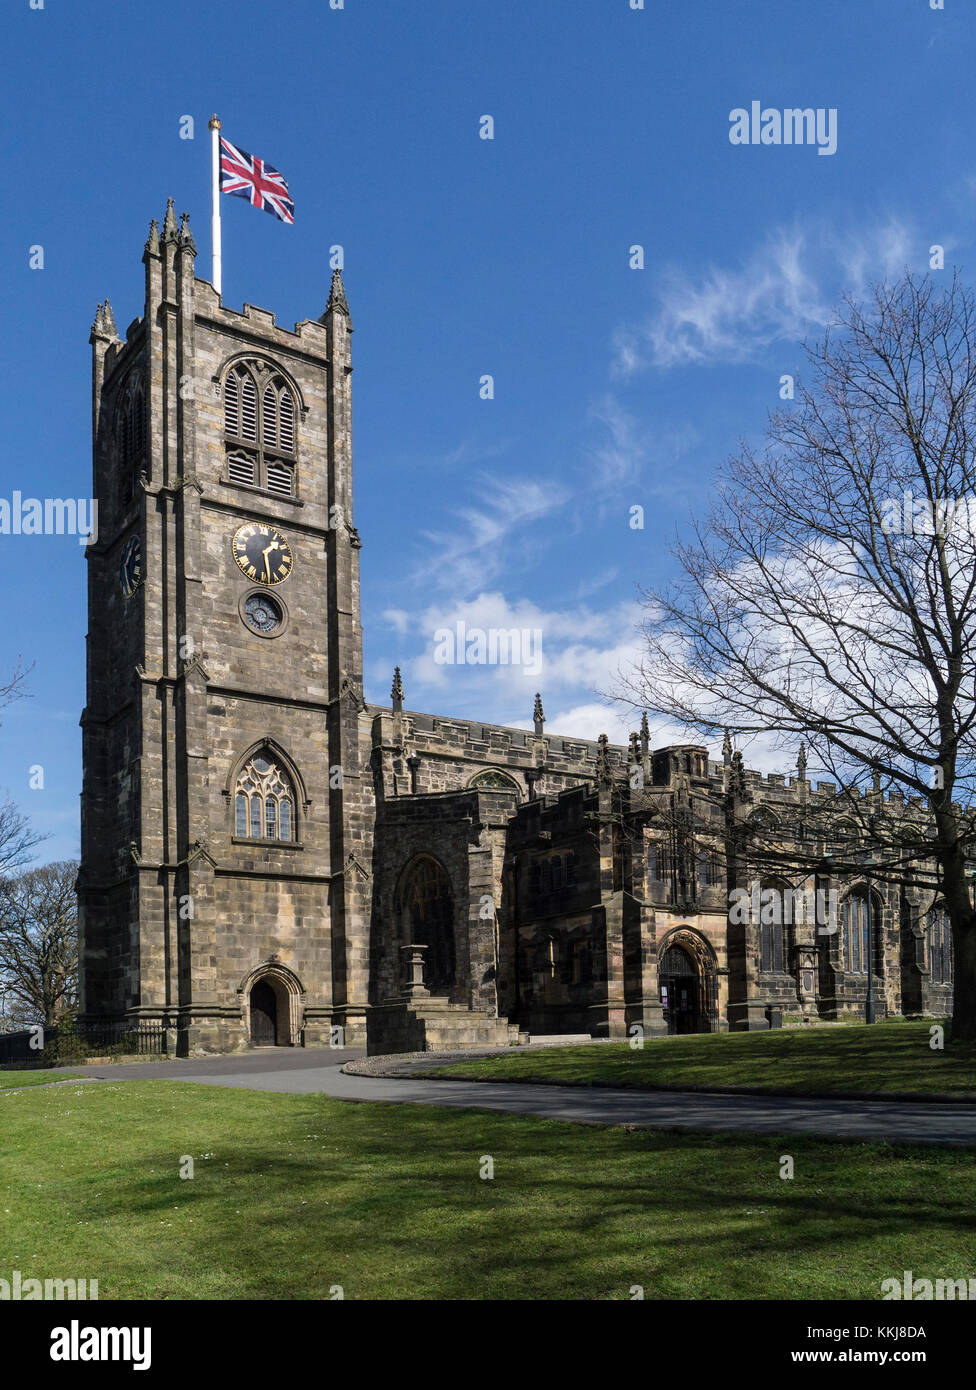 Lancaster Priory, anciennement de l'église St Mary, est l'église paroissiale de la ville de Lancaster dans le Lancashire, Angleterre. Il est situé près de Château de Lancaster Banque D'Images